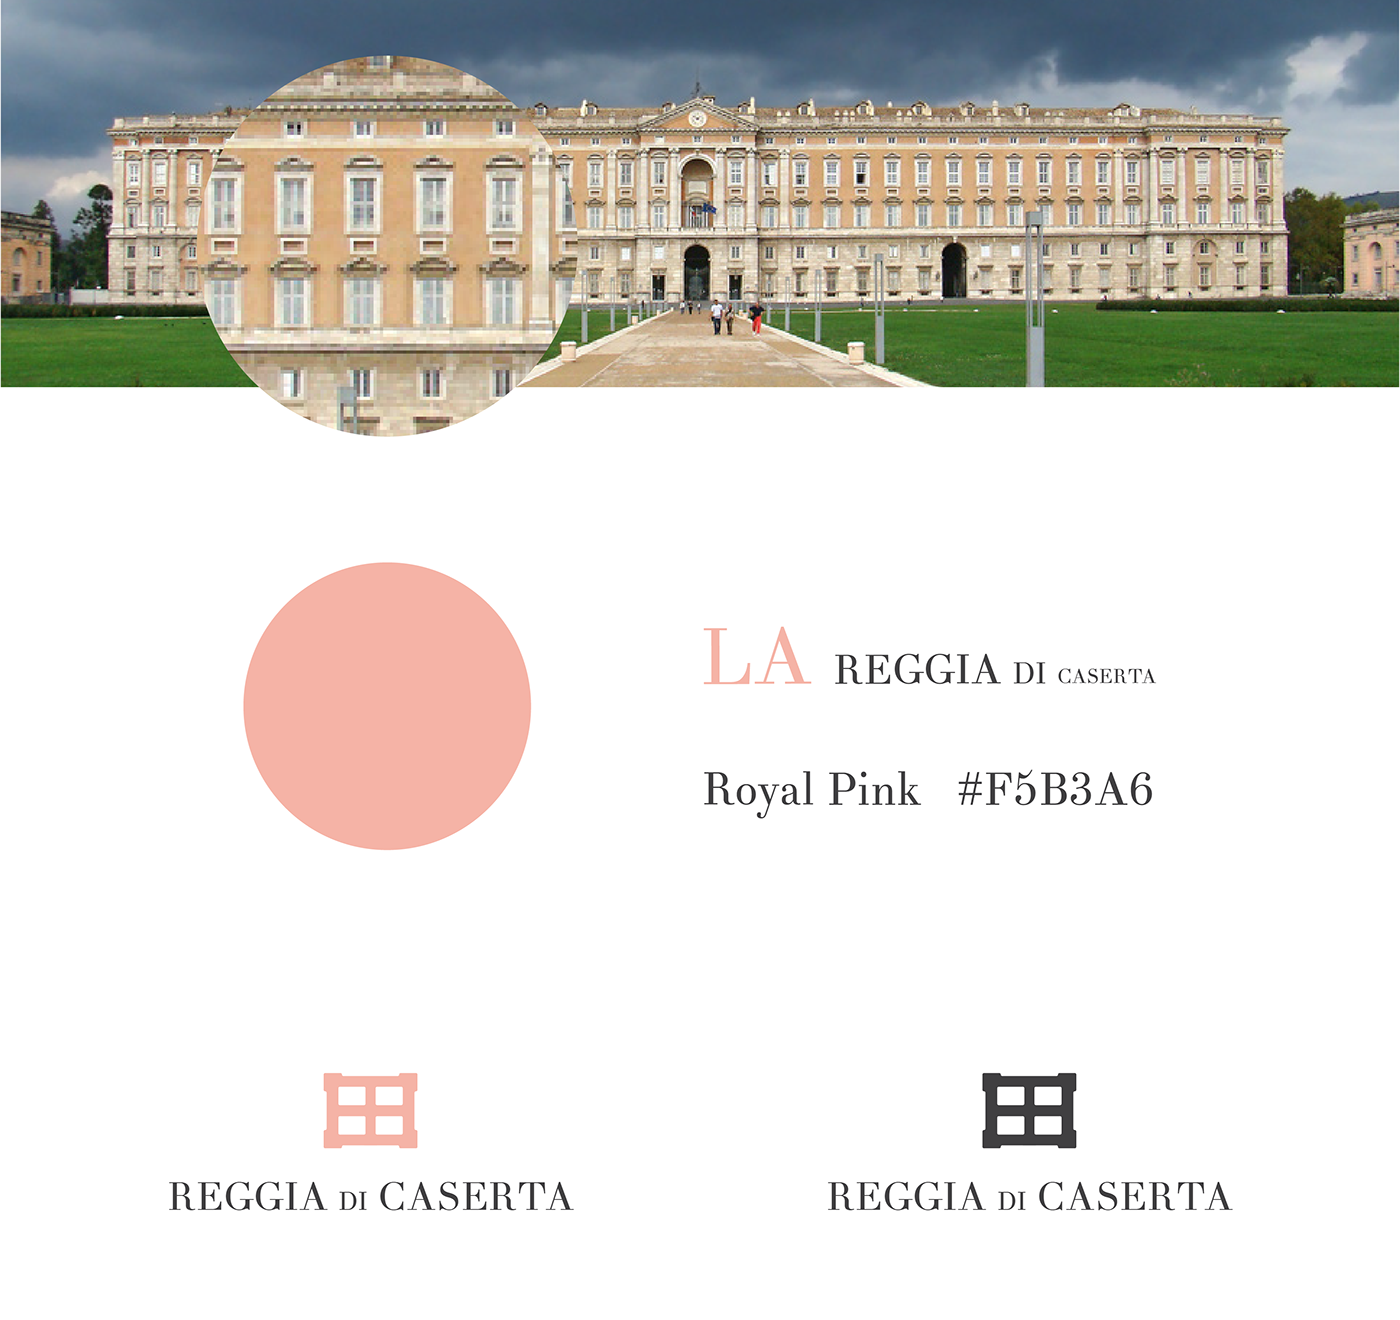 Reggia di Caserta Caserta Royal Palace NAPOLI italia reggia Corporate Identity brand logo